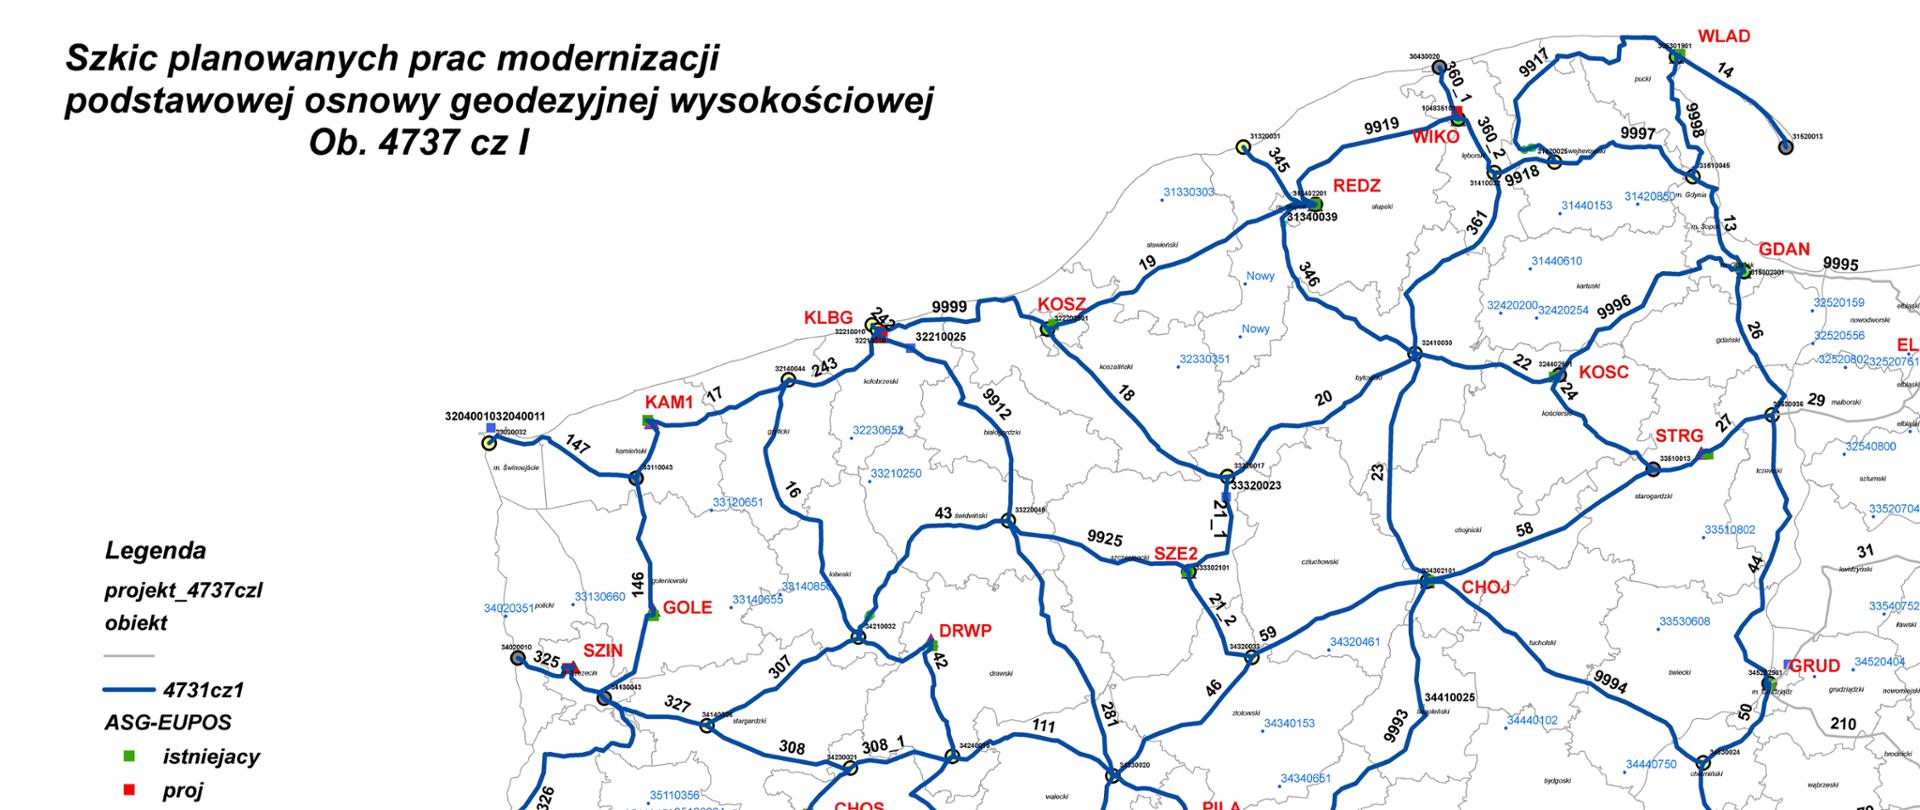 Ilustracja przedstawia fragment terytorium Polski z przebiegiem linii niwelacyjnych planowanych do przeglądu w ramach zawartej umowy.